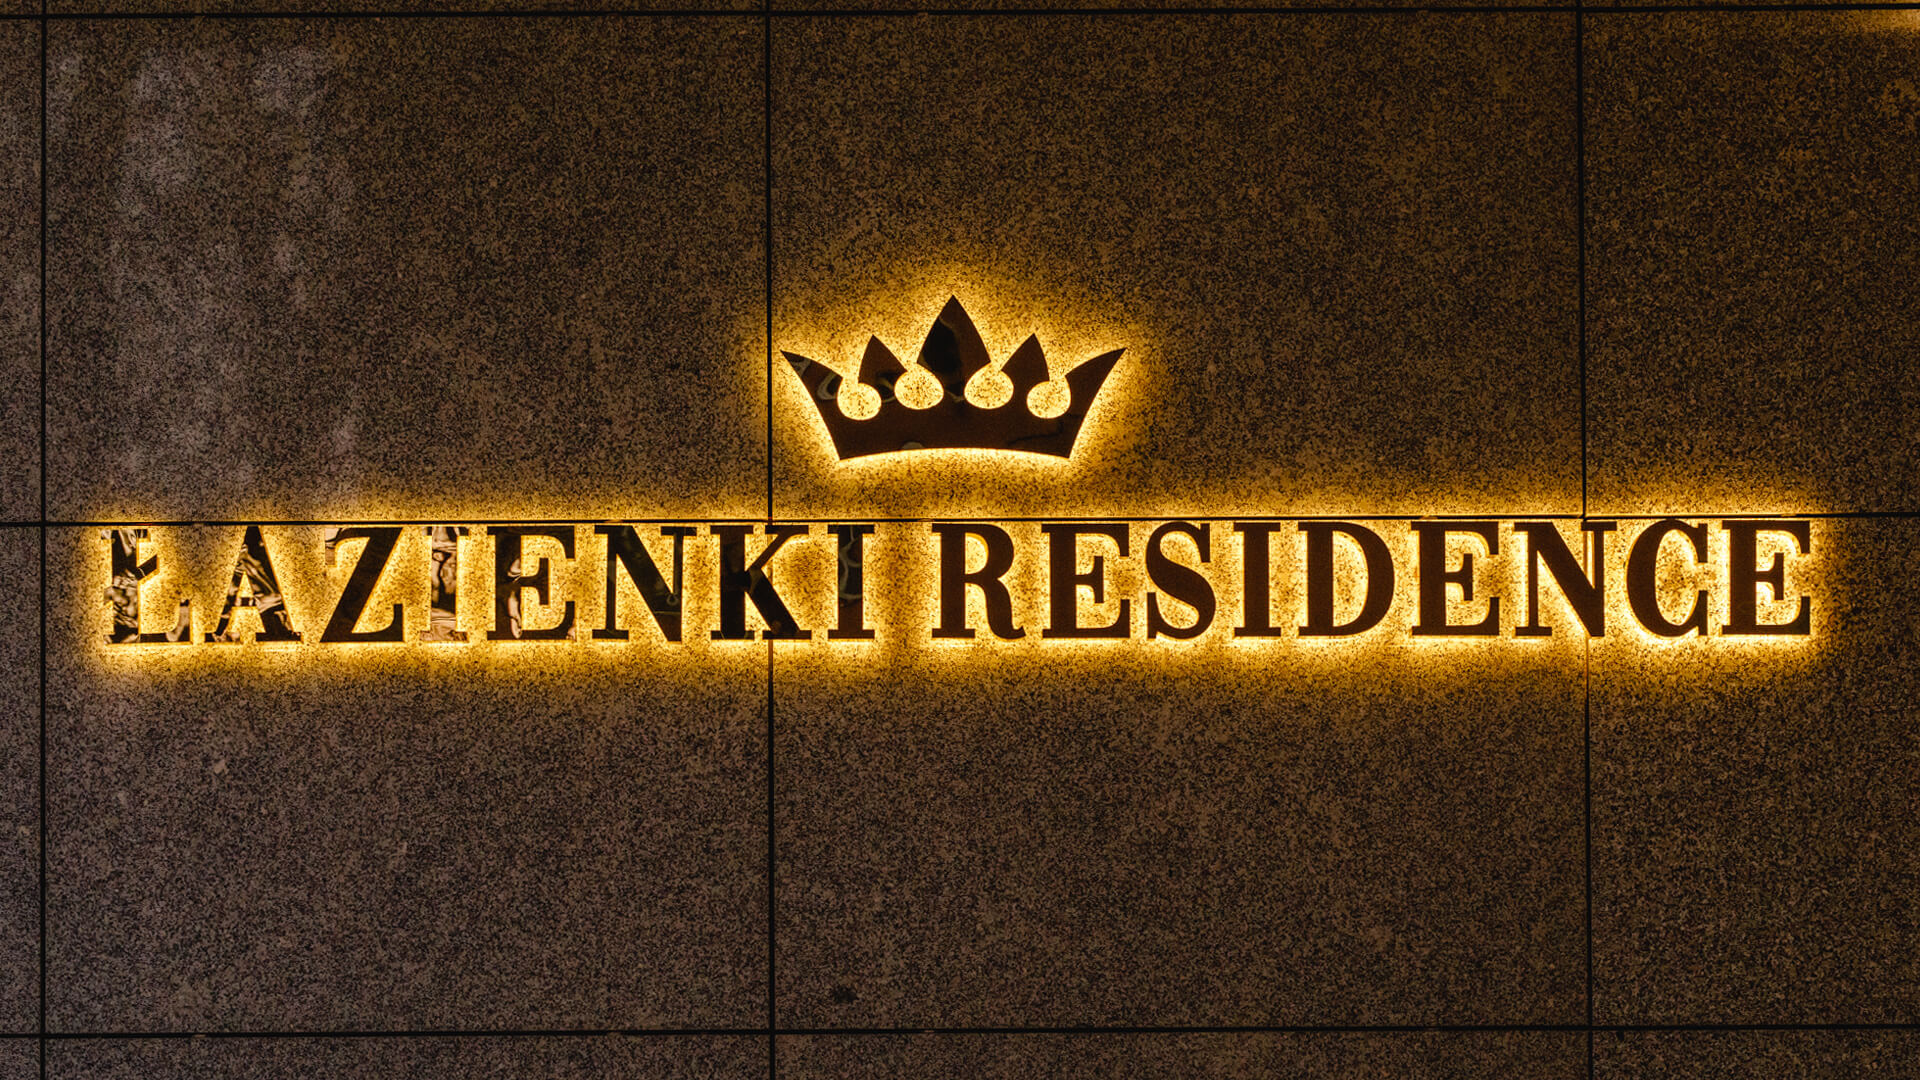 Residenza Bagni - Lettera per il bagno Residence in acciaio inox color oro, retroilluminata a LED sulla parete, con una corona nel logo.